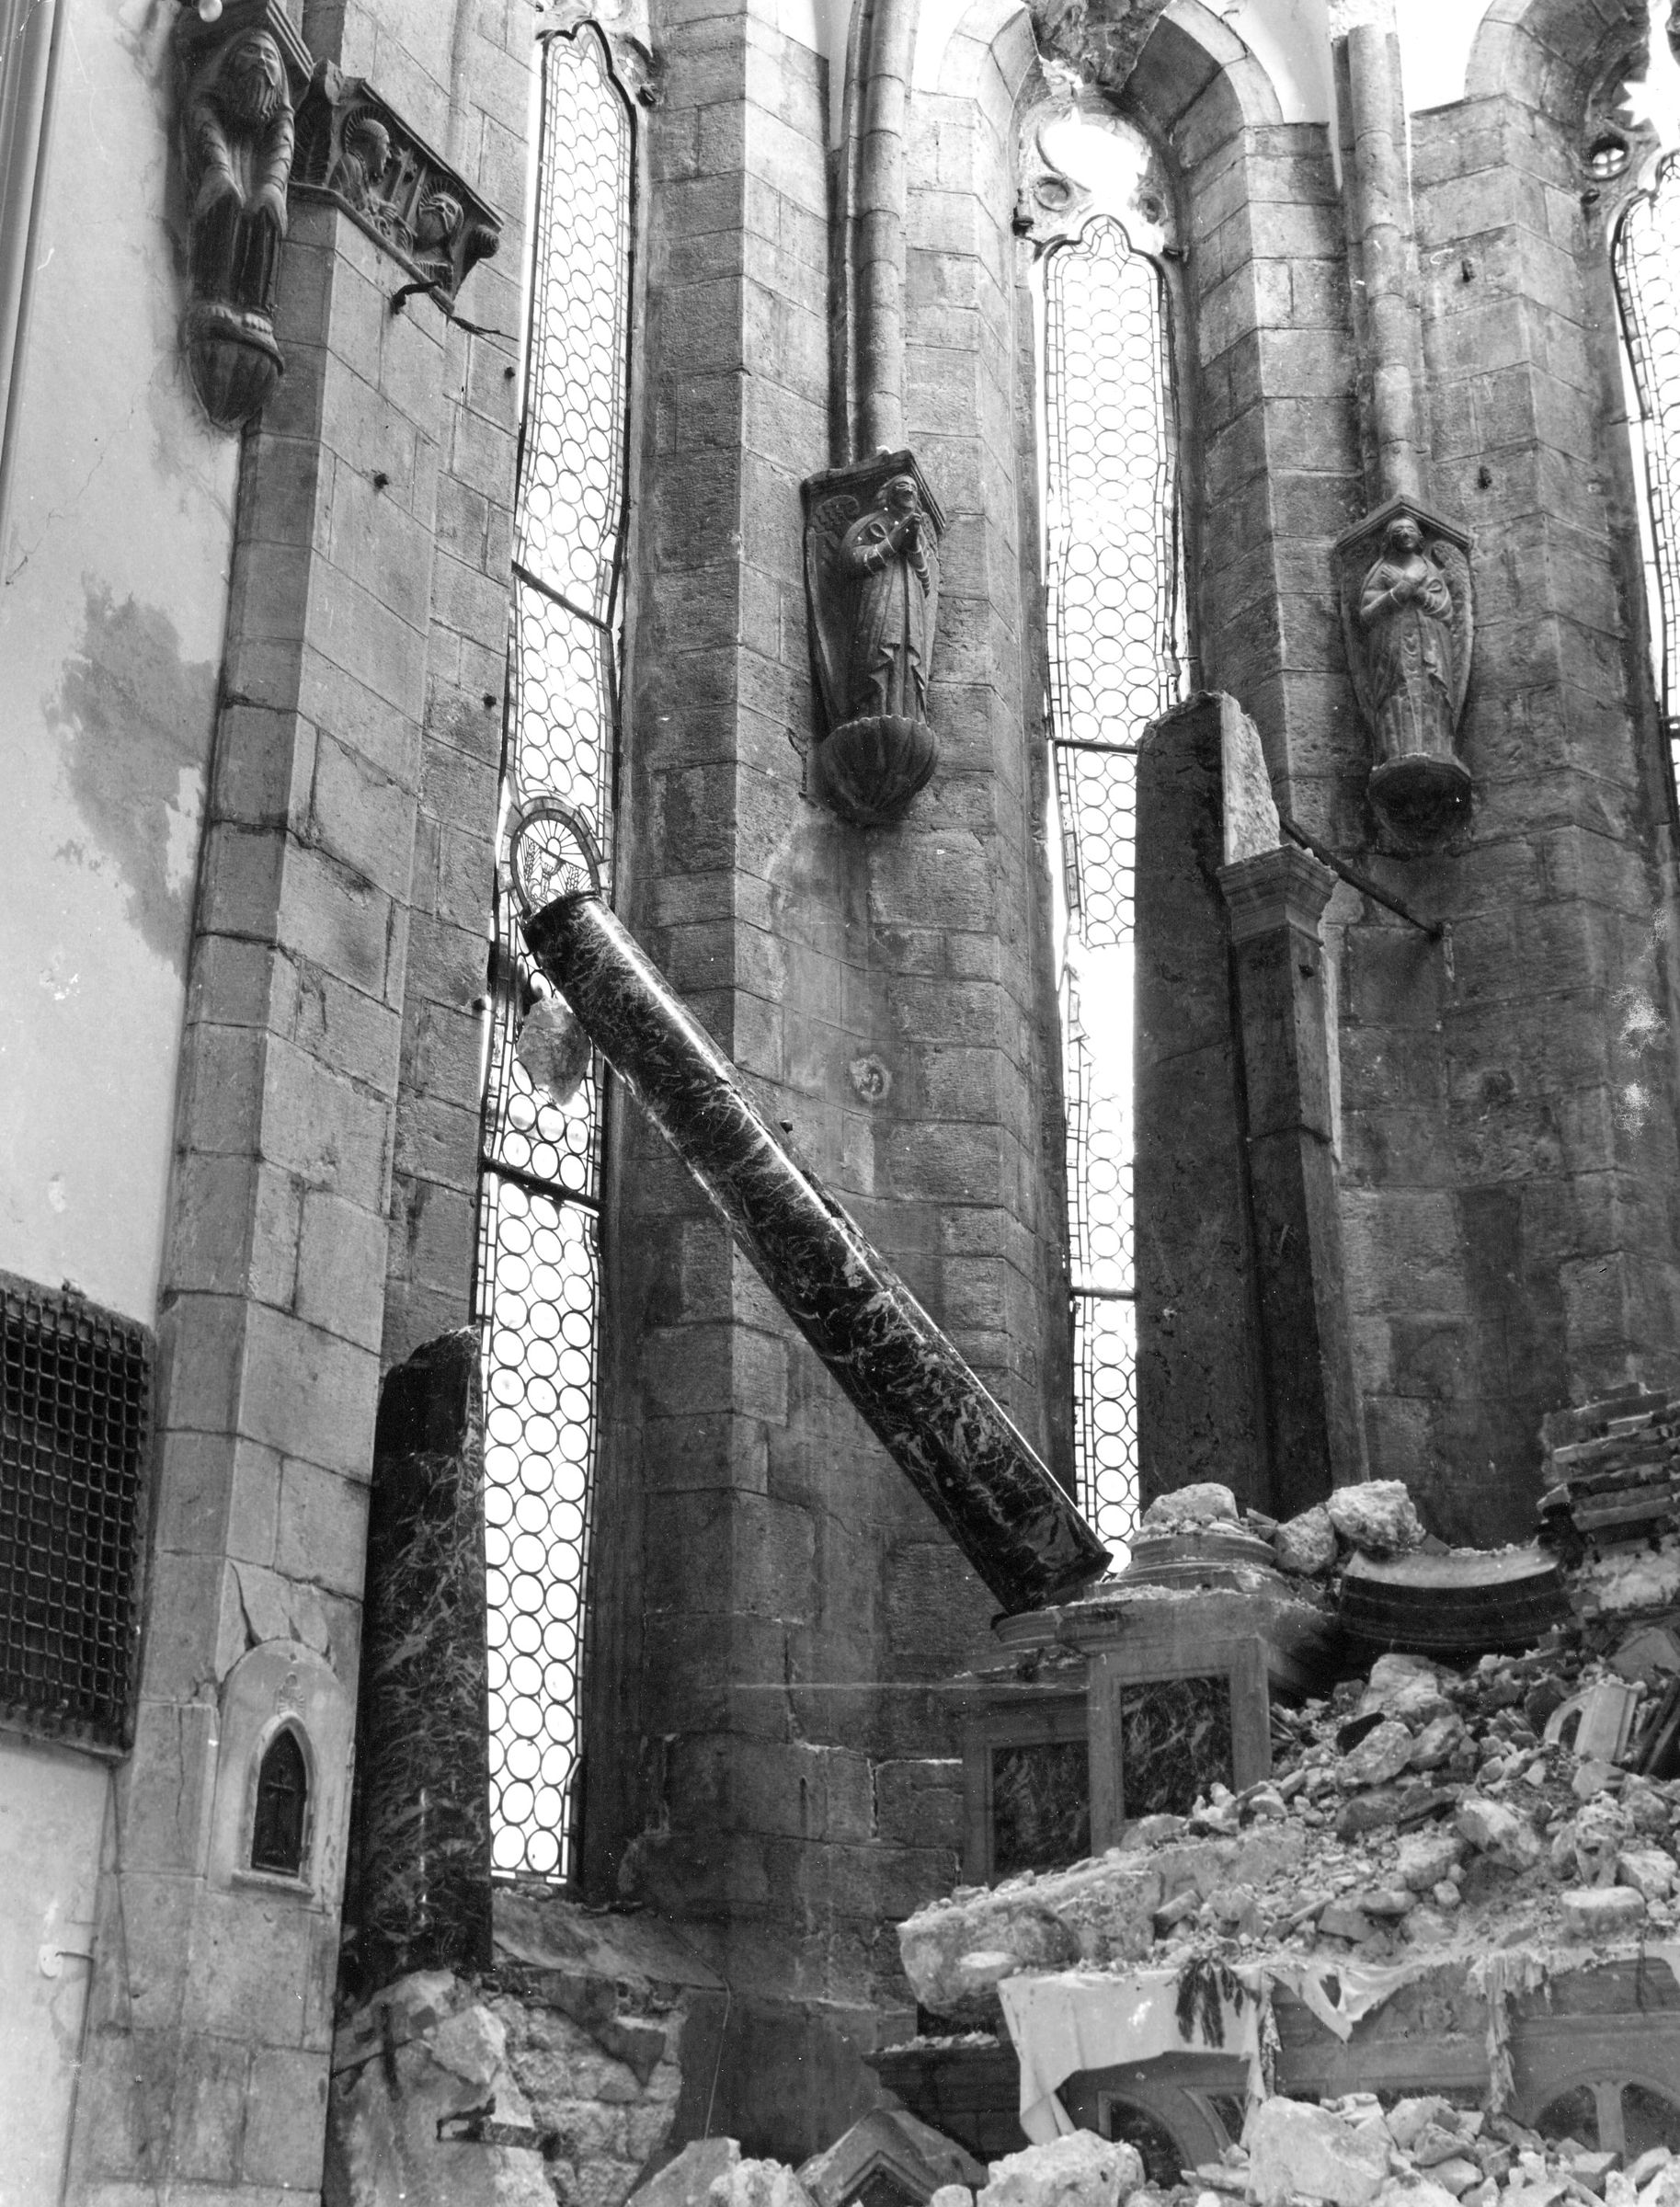 Fotografo non identificato, Venzone - Terremoto, Duomo di S. Andrea Apostolo, abside, vista di dettaglio, interno, 1976, gelatina ai sali d'argento/pellicola (acetati), 6x6cm, N029846